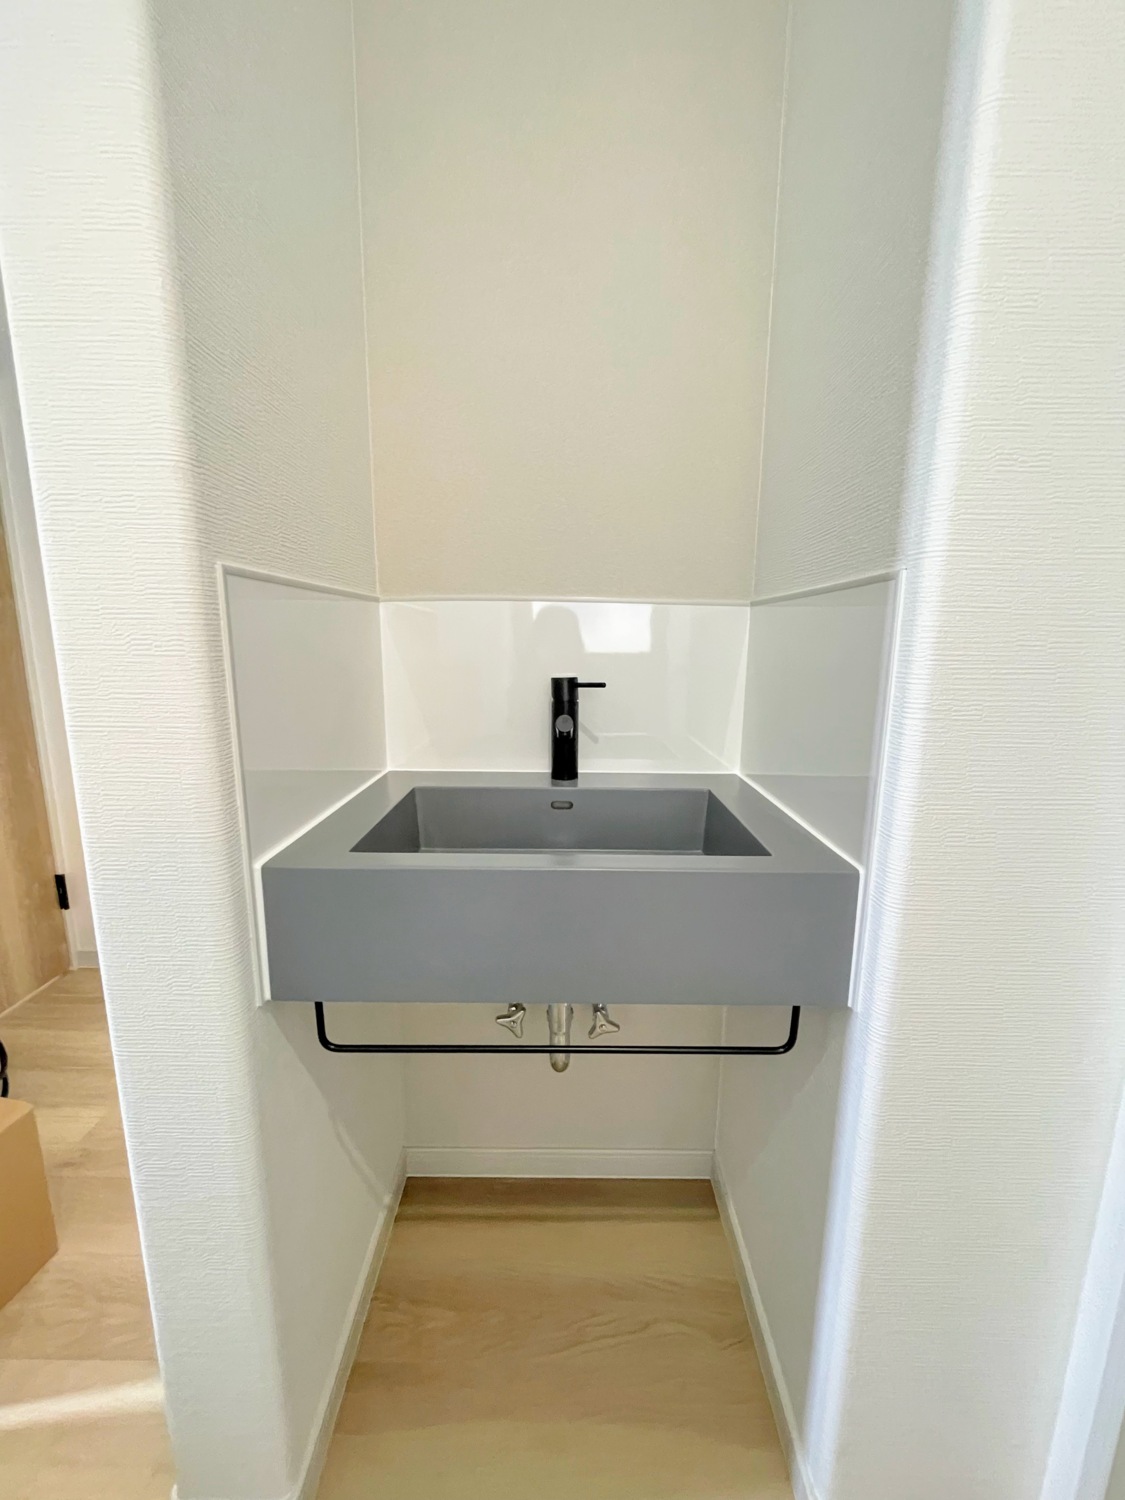 習慣づけに最適の玄関ホール手洗い器完備！充実した設備で楽しく暮らす居心地のよいシンプルモダンハウス